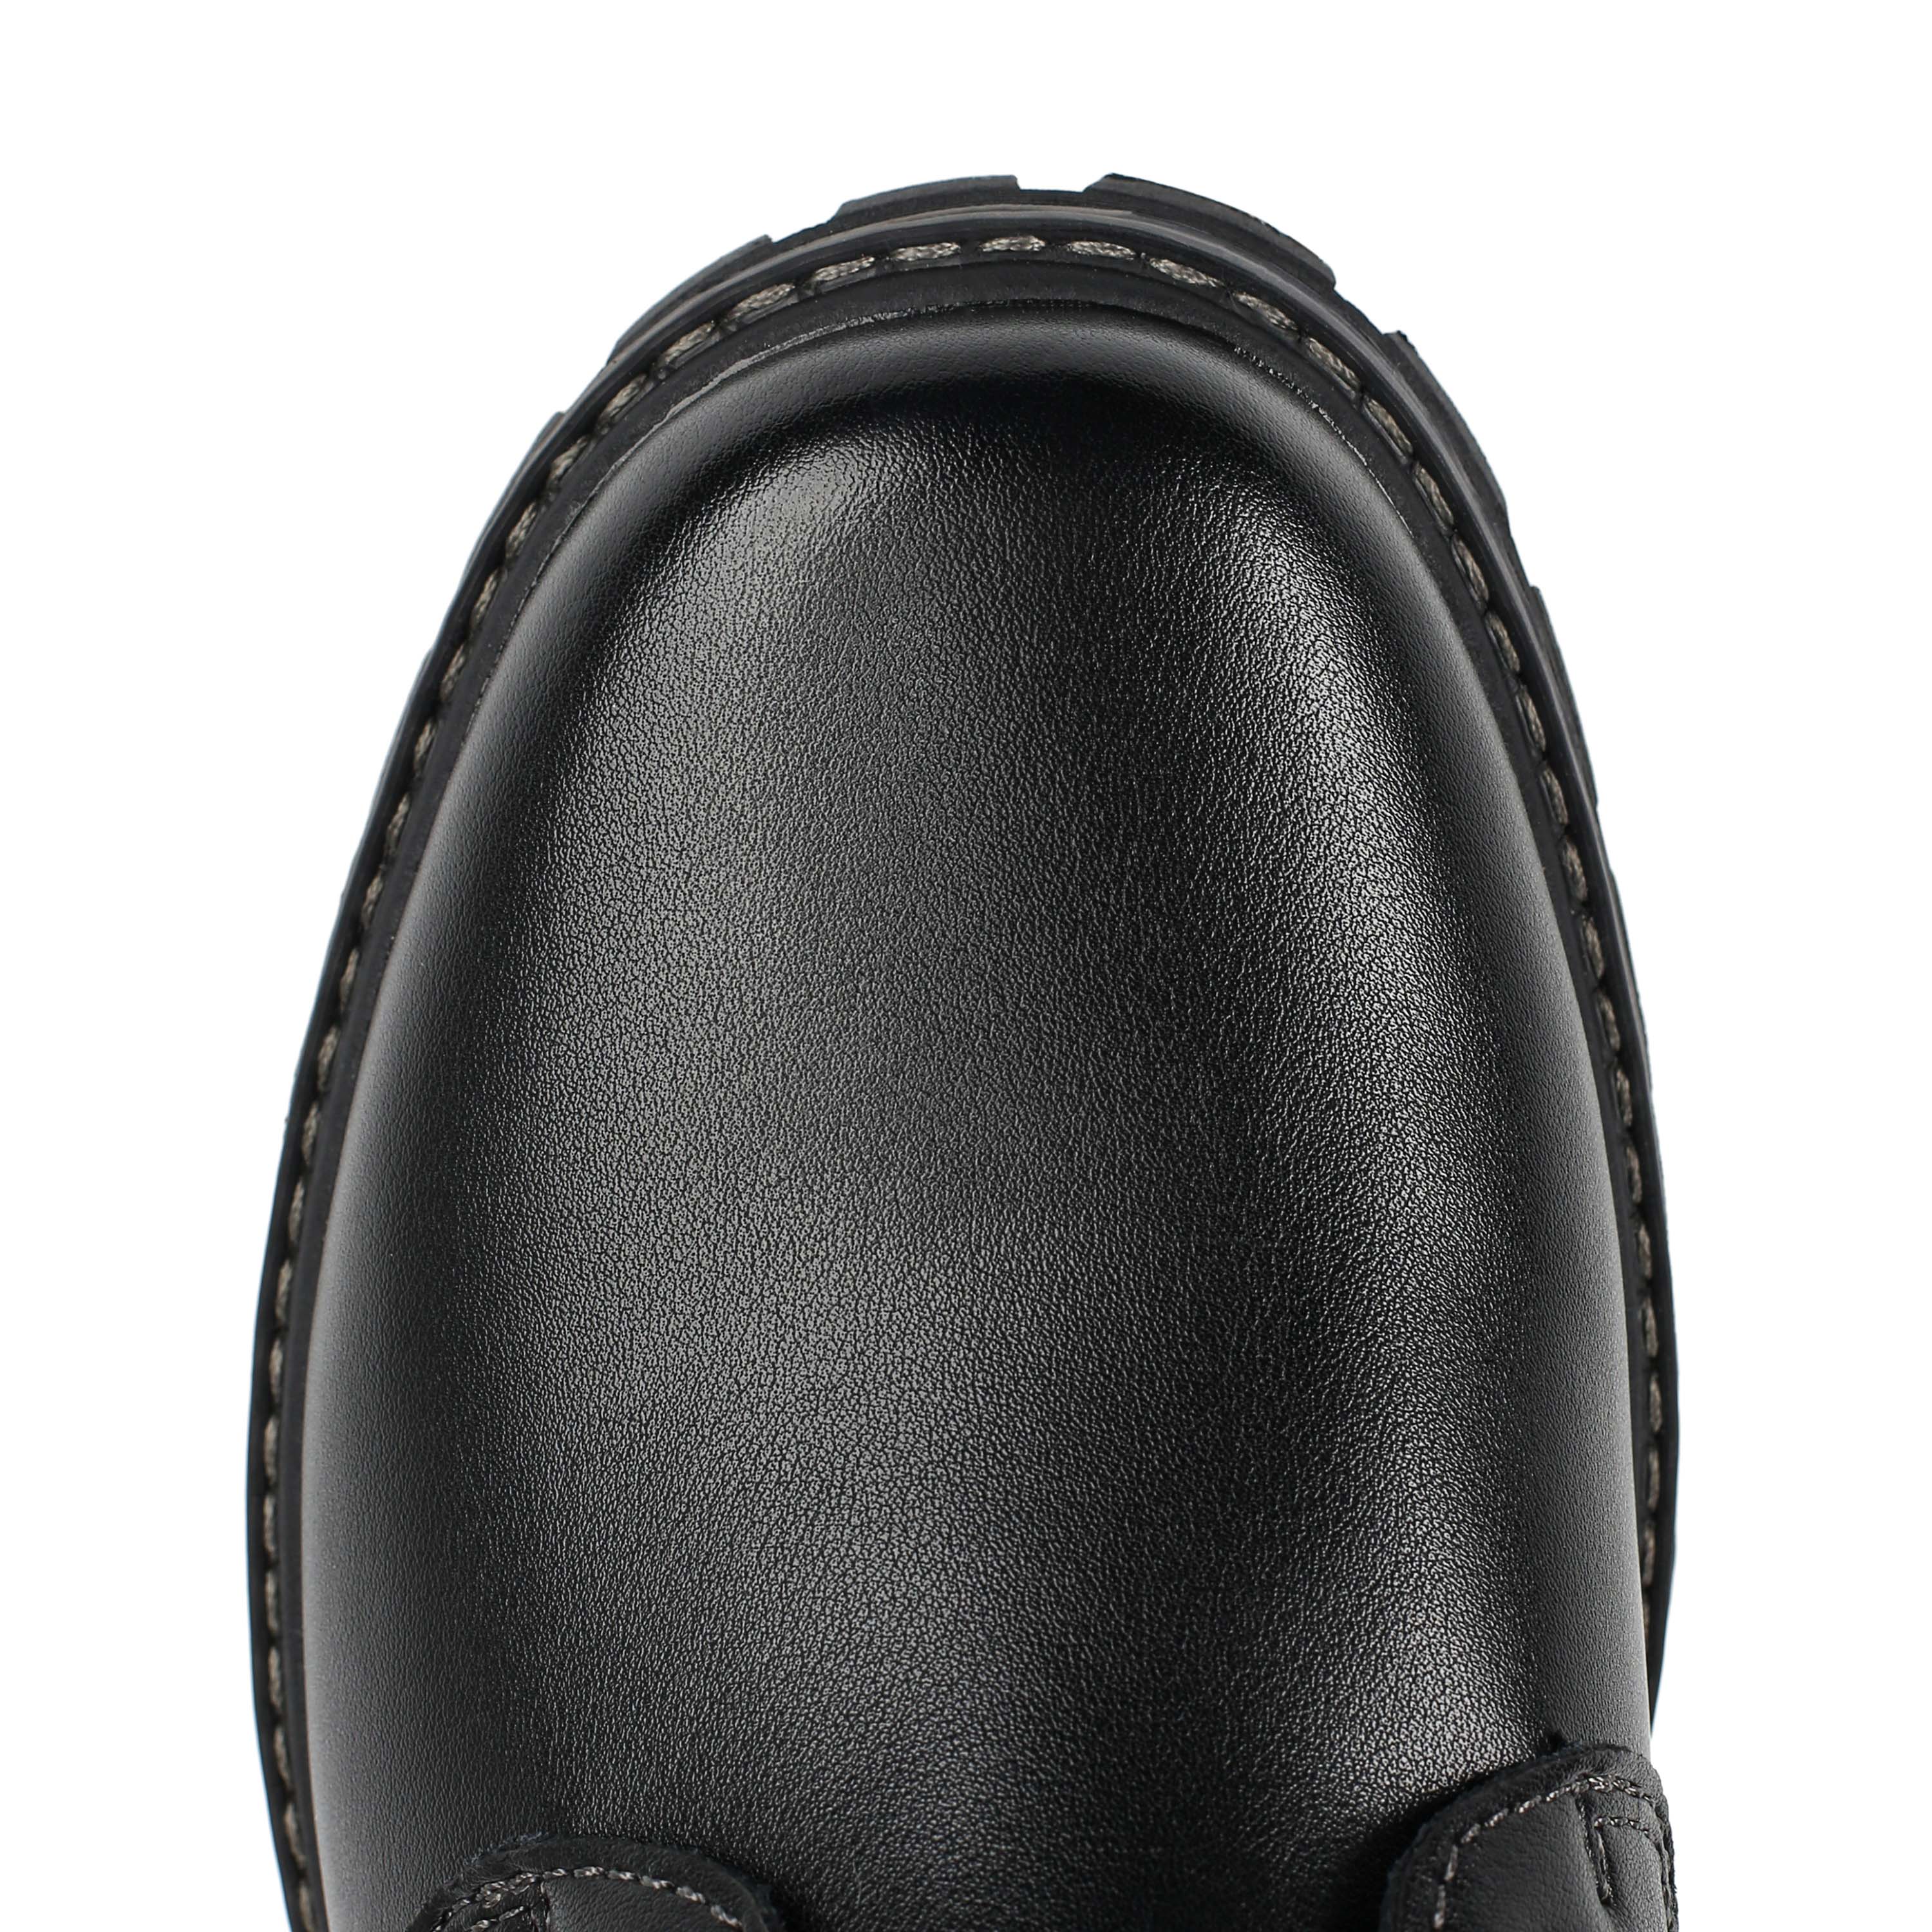 Ботинки Thomas Munz 187-051A-5102 187-051A-5102, цвет черный, размер 41 дерби - фото 5